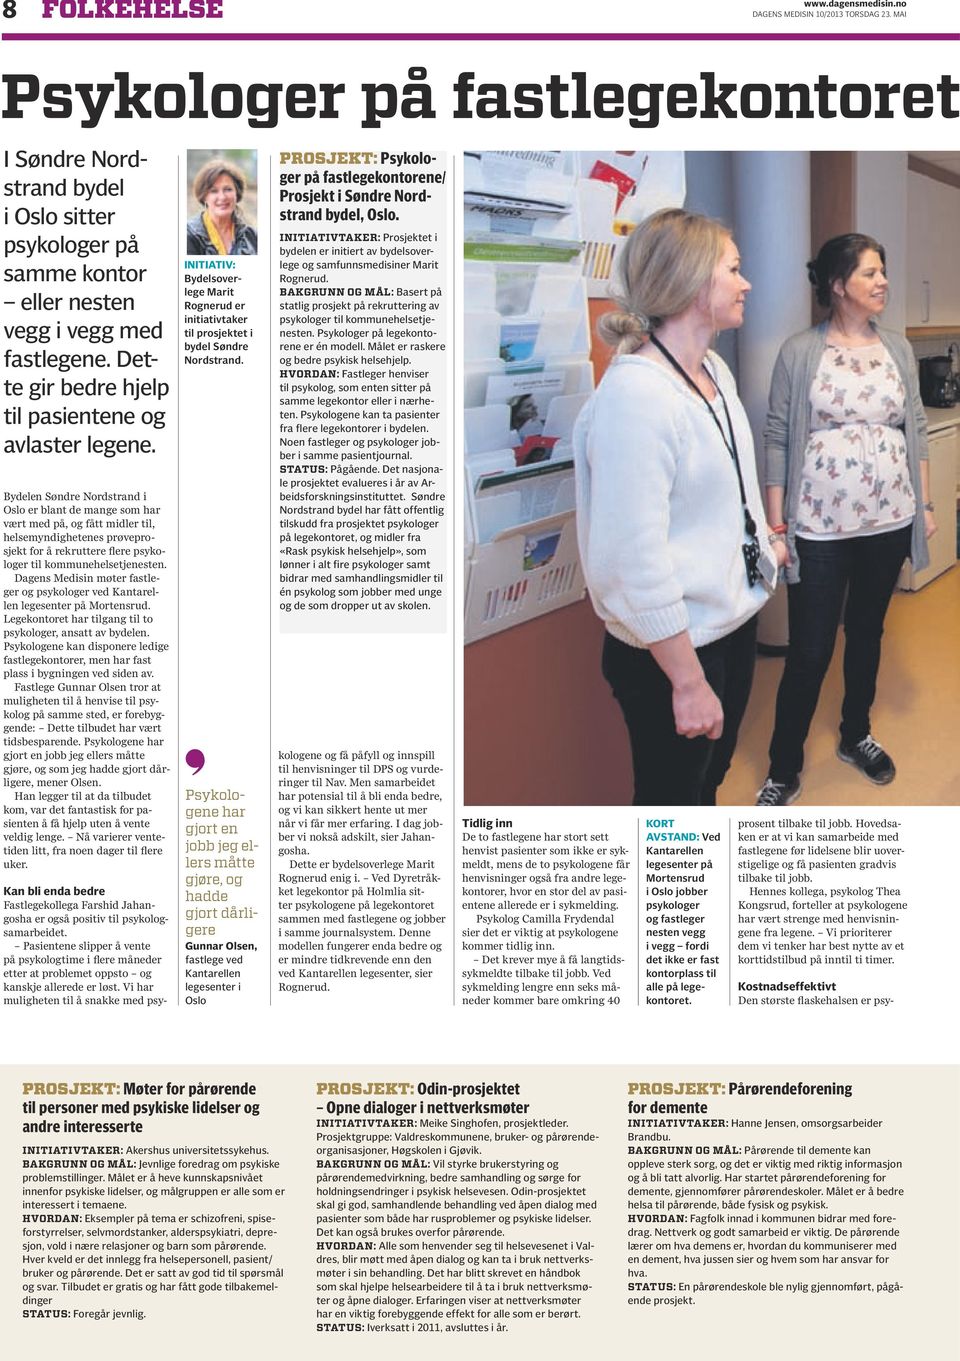 Bydelen Søndre Nordstrand i Oslo er blant de mange som har vært med på, og fått midler til, helsemyndighetenes prøveprosjekt for å rekruttere flere psykologer til kommunehelsetjenesten.